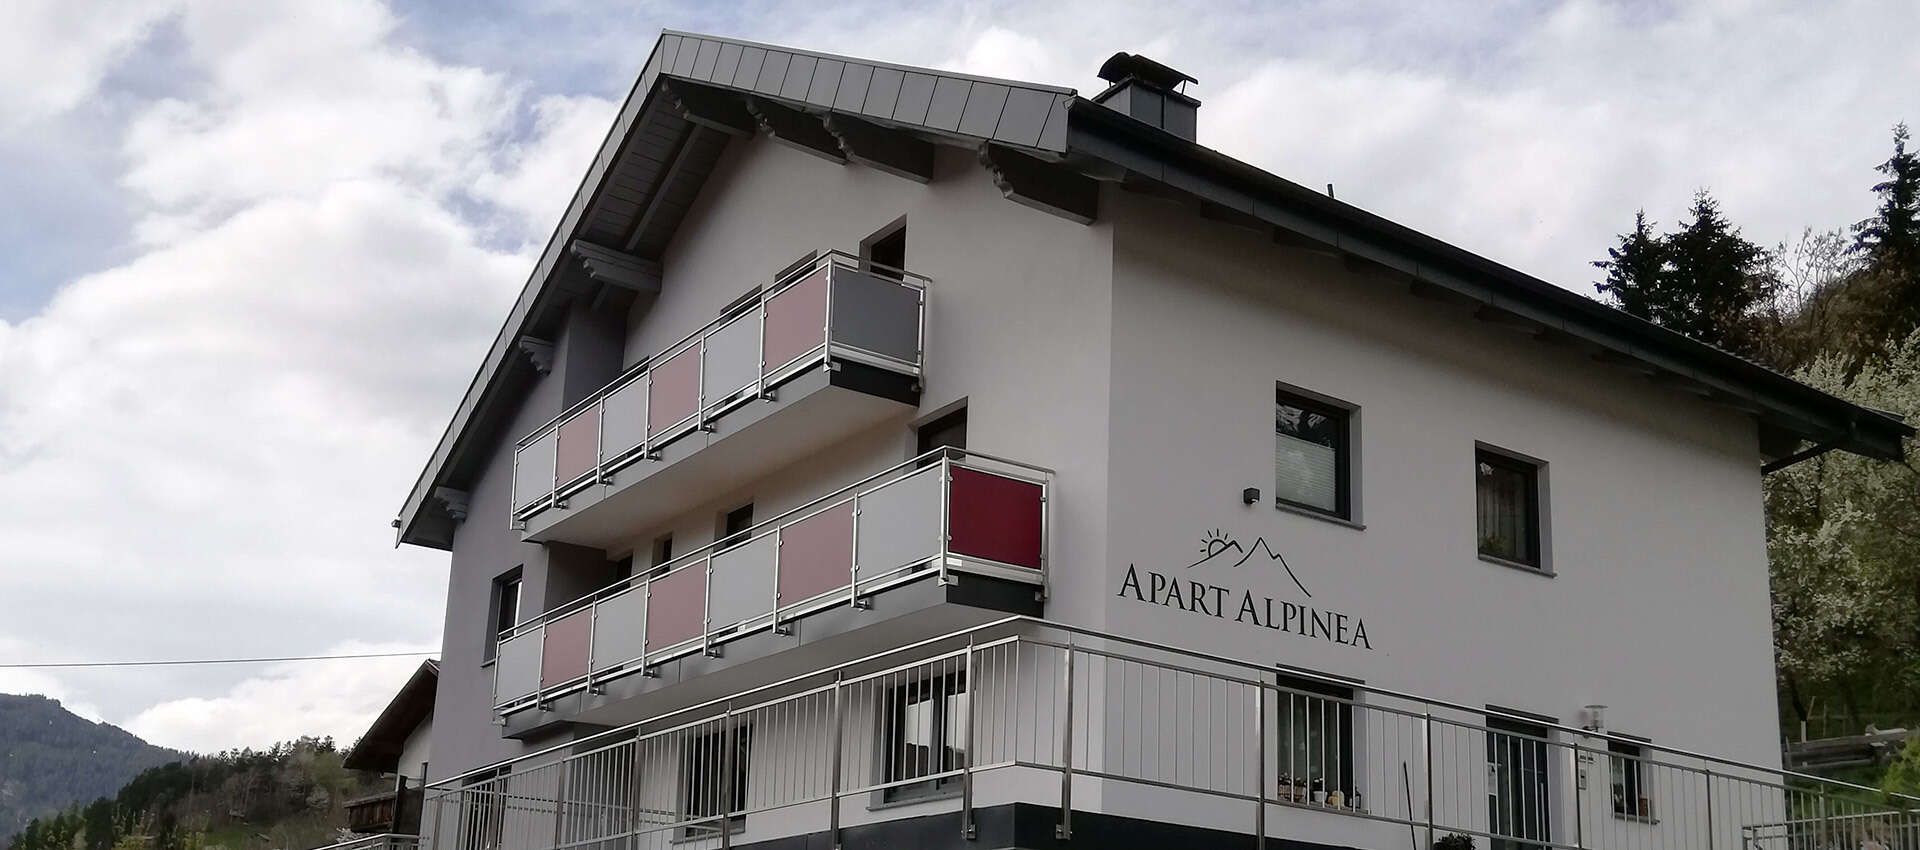 Apart Alpinea in Kauns, Kaunertal Tirol